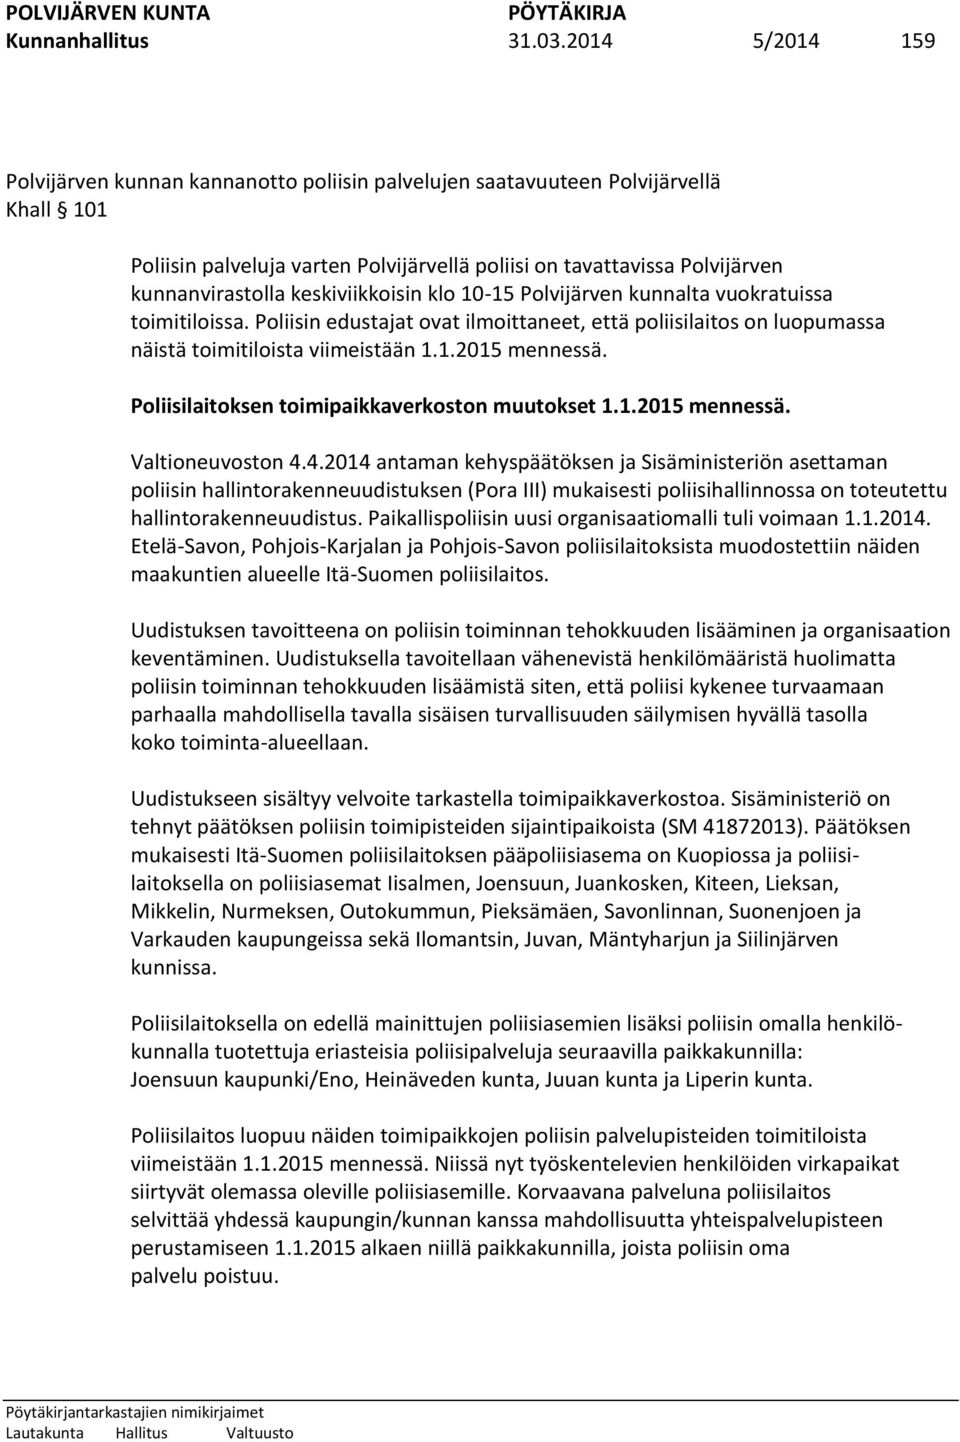 keskiviikkoisin klo 10-15 Polvijärven kunnalta vuokratuissa toimitiloissa. Poliisin edustajat ovat ilmoittaneet, että poliisilaitos on luopumassa näistä toimitiloista viimeistään 1.1.2015 mennessä.